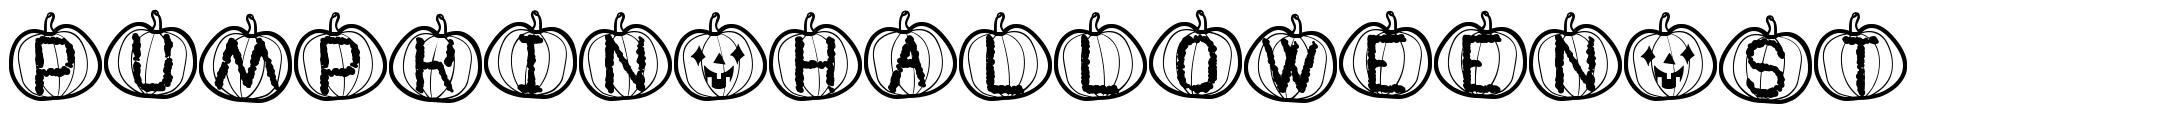 Pumpkin Halloween St font